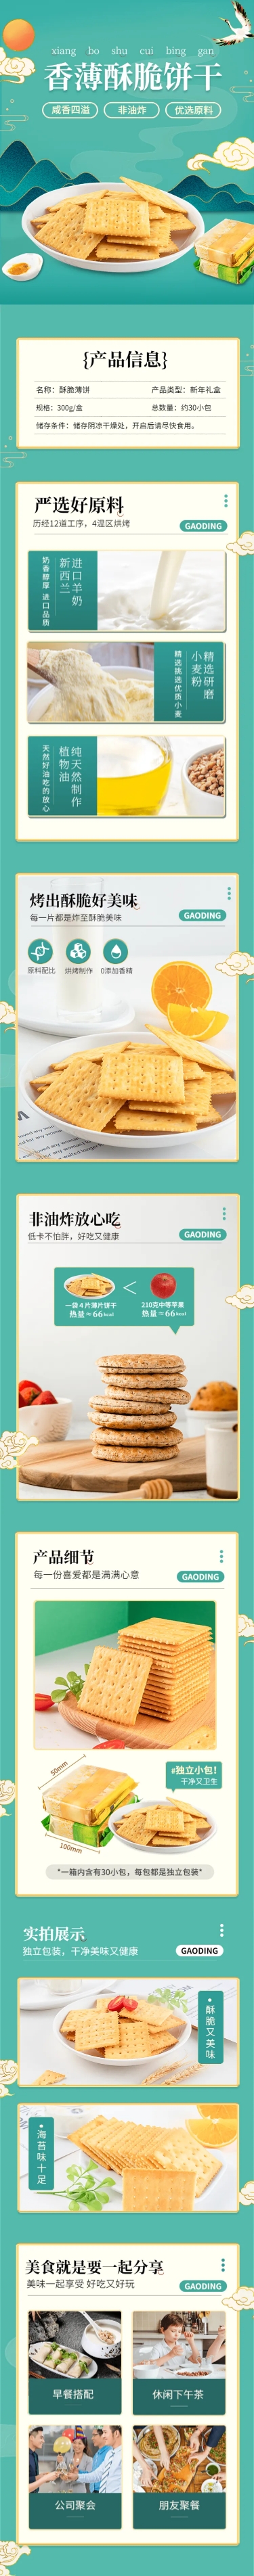 零食饼干类产品展示详情页